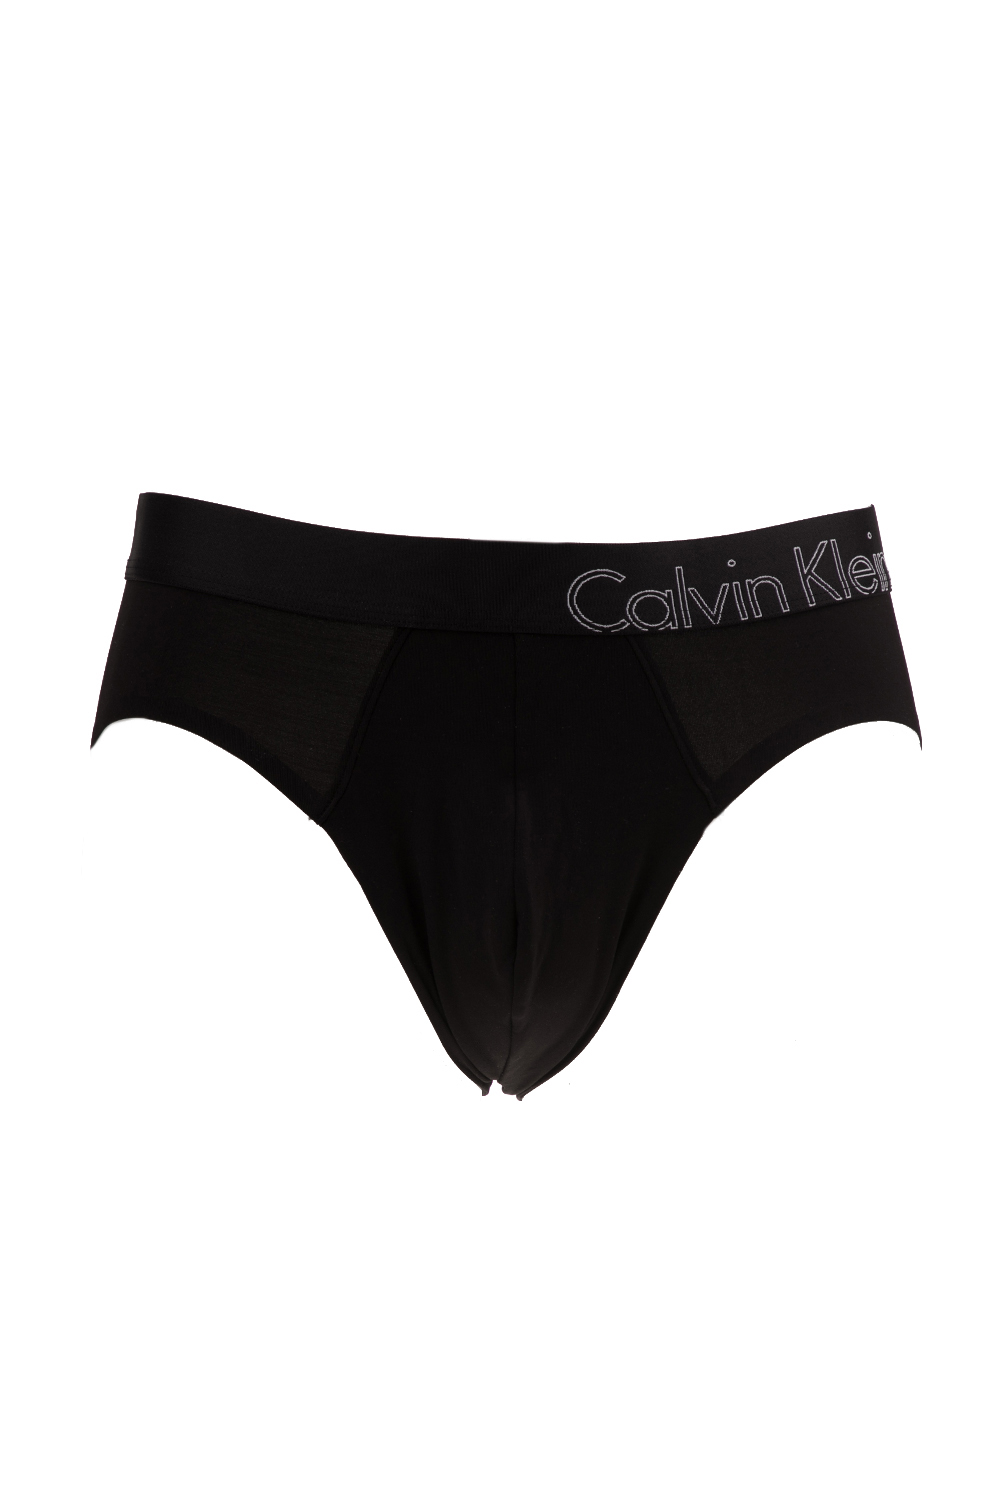 CK UNDERWEAR – Ανδρικό σλιπ HIP BRIEF ck underwear μαύρο 1521801.0-0071